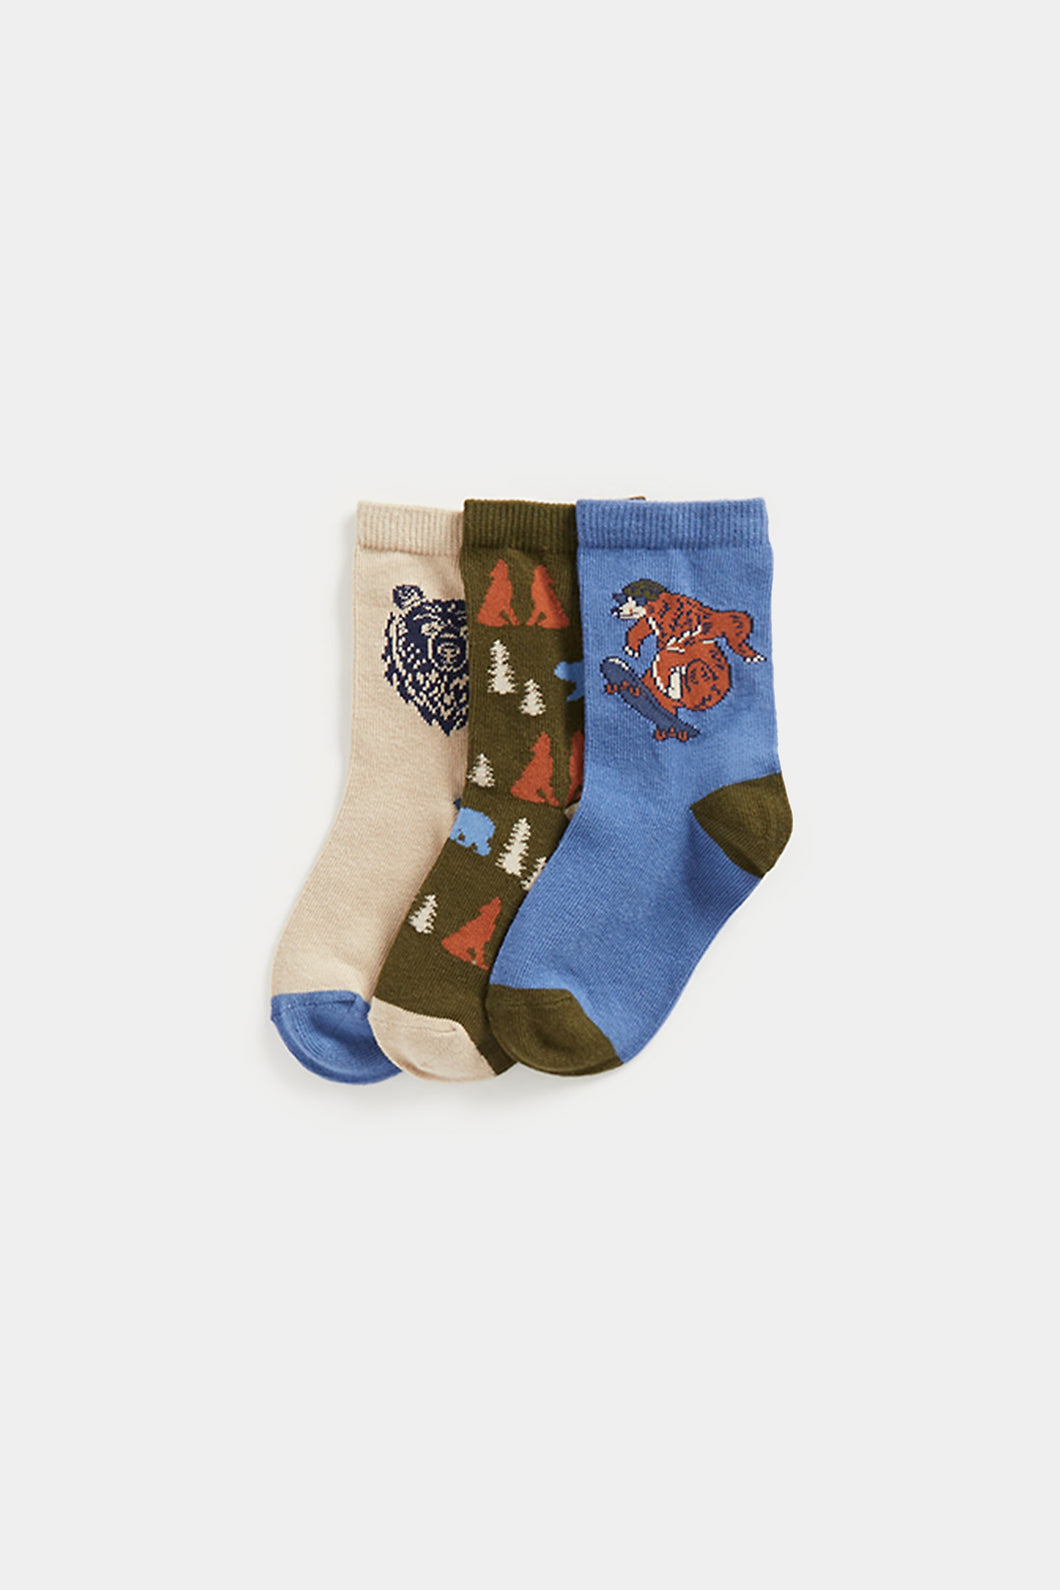 Mothercare Skate Bear Socks - 3 Pack